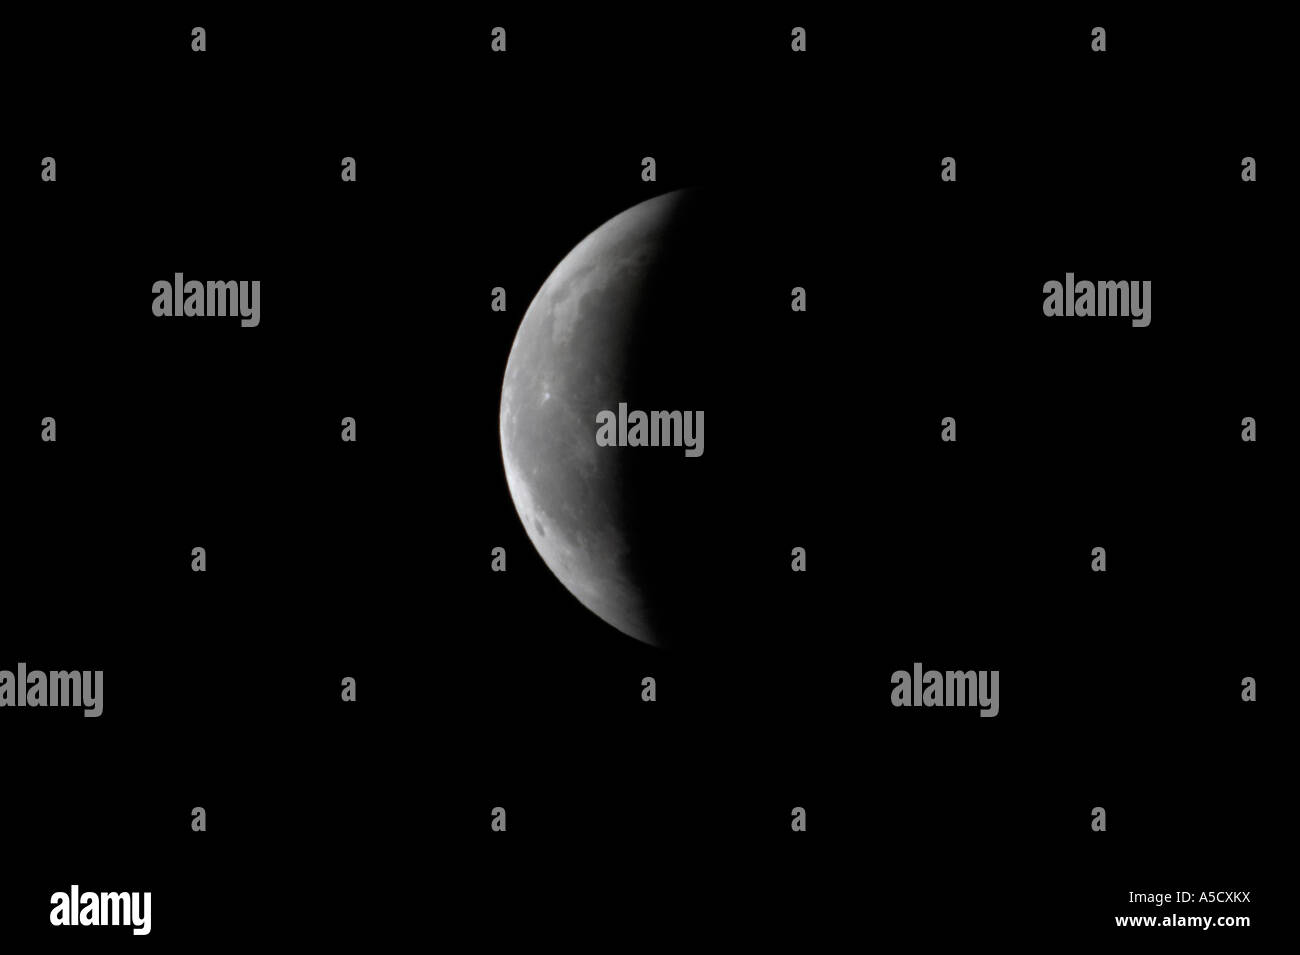 Lune émergeant lentement de l'ombre des terres après la totalité avec éclipse lunaire totale en cours comme vu de l'Irlande du Nord mars 2007 Banque D'Images